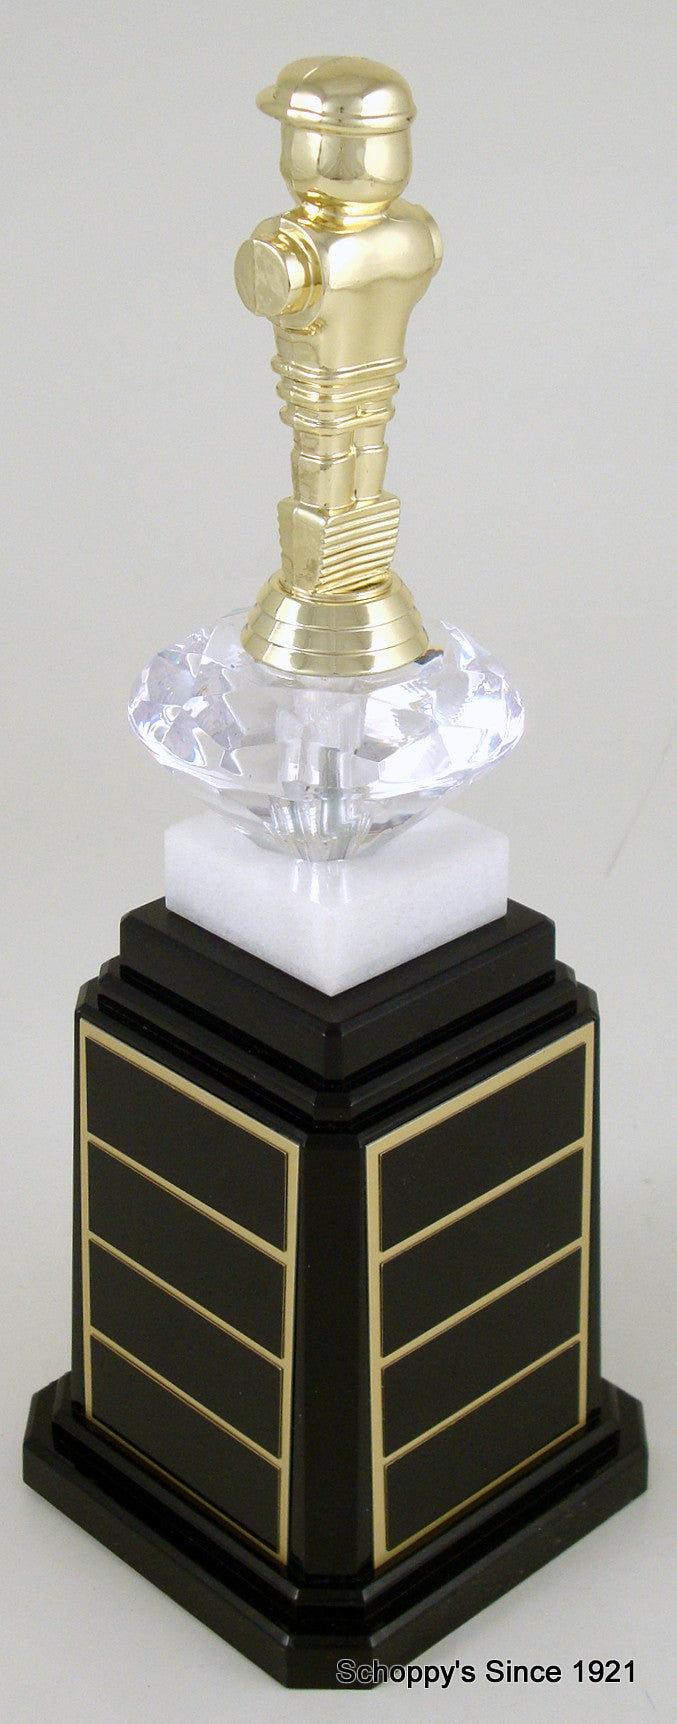 Foosball Figure Tower Base Trophy-Trophy-Schoppy&